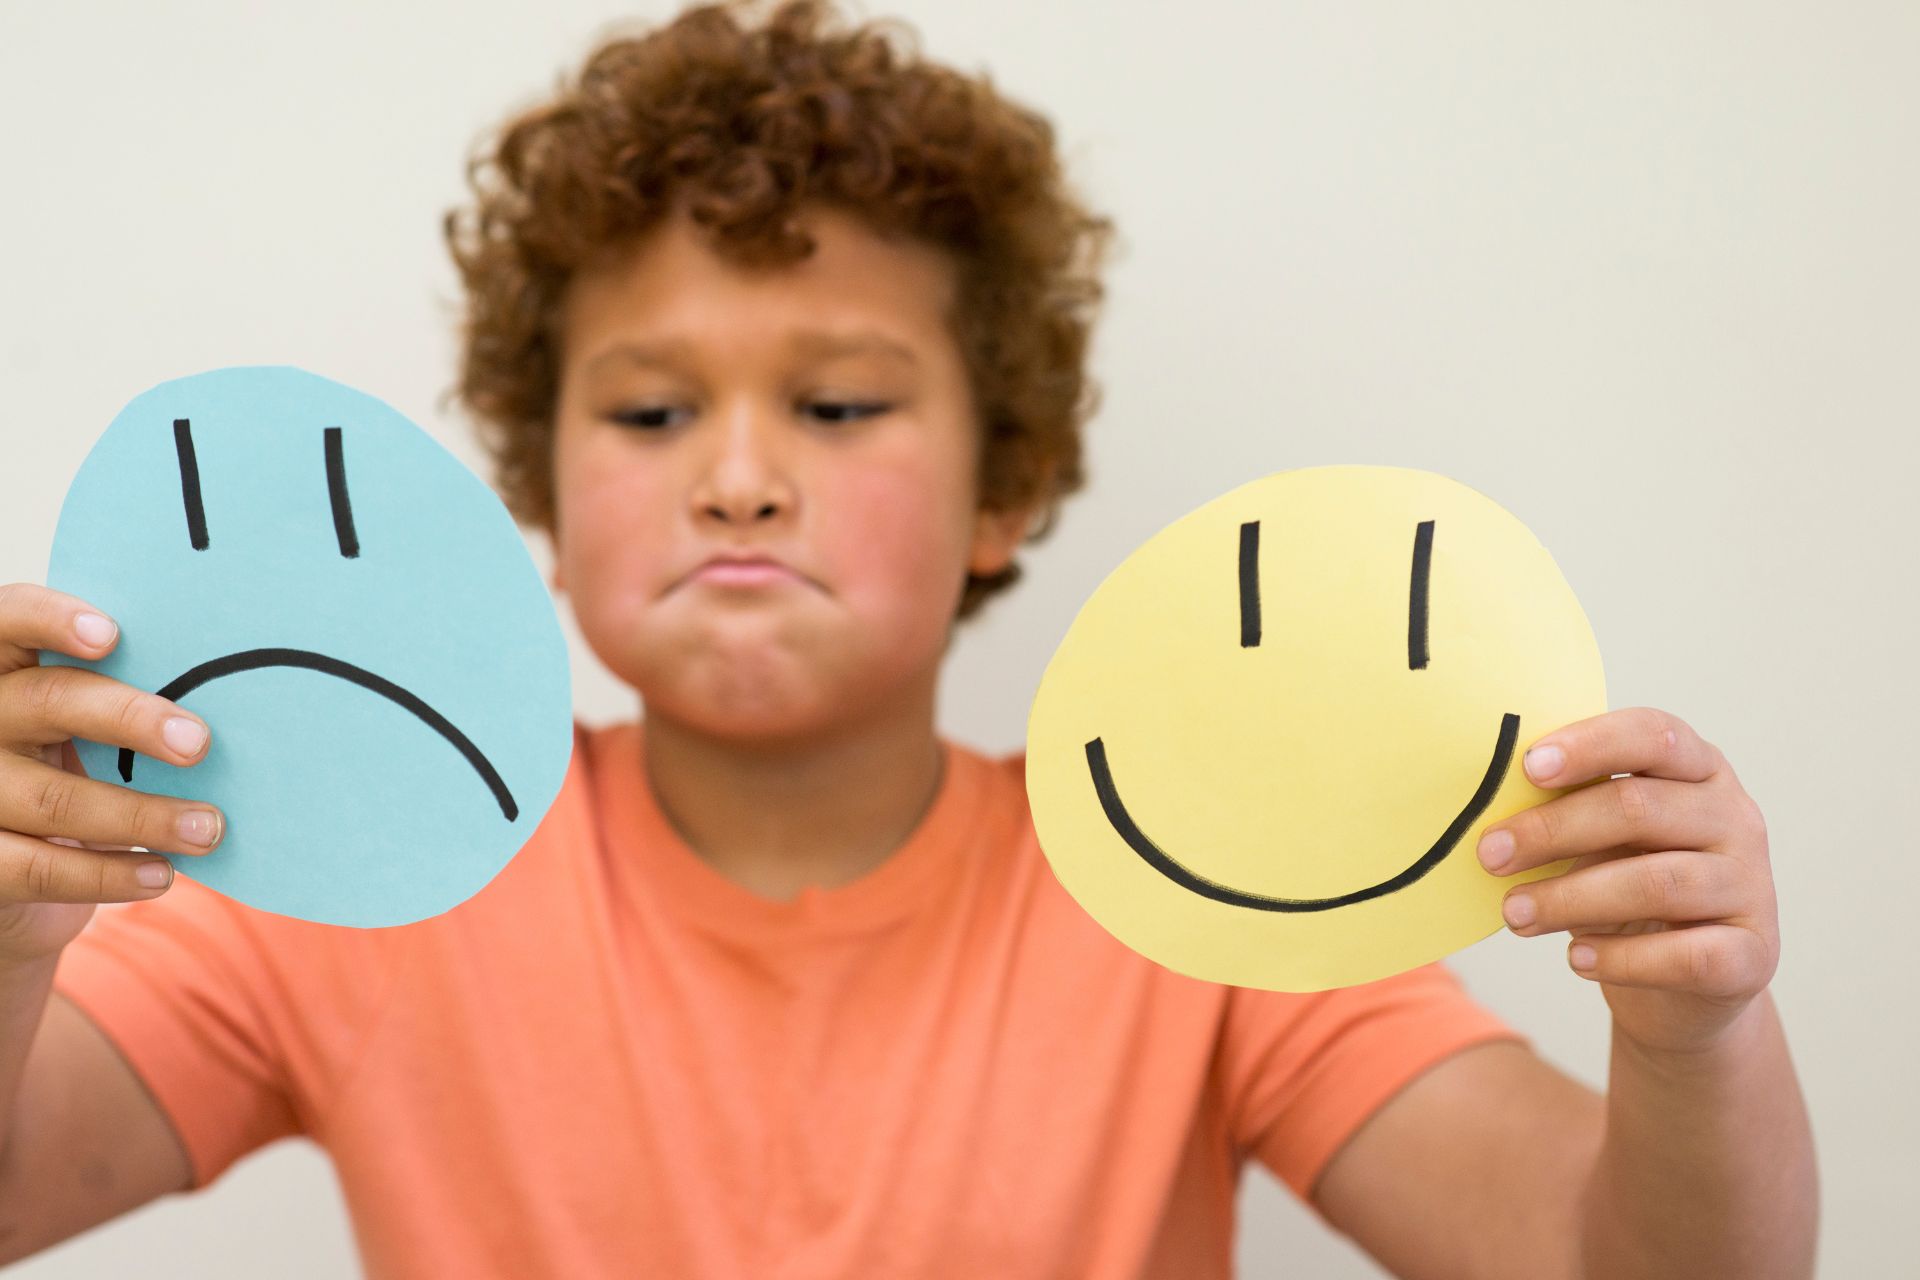 Emoce ve vývoji dítěte a jejich rozvoj